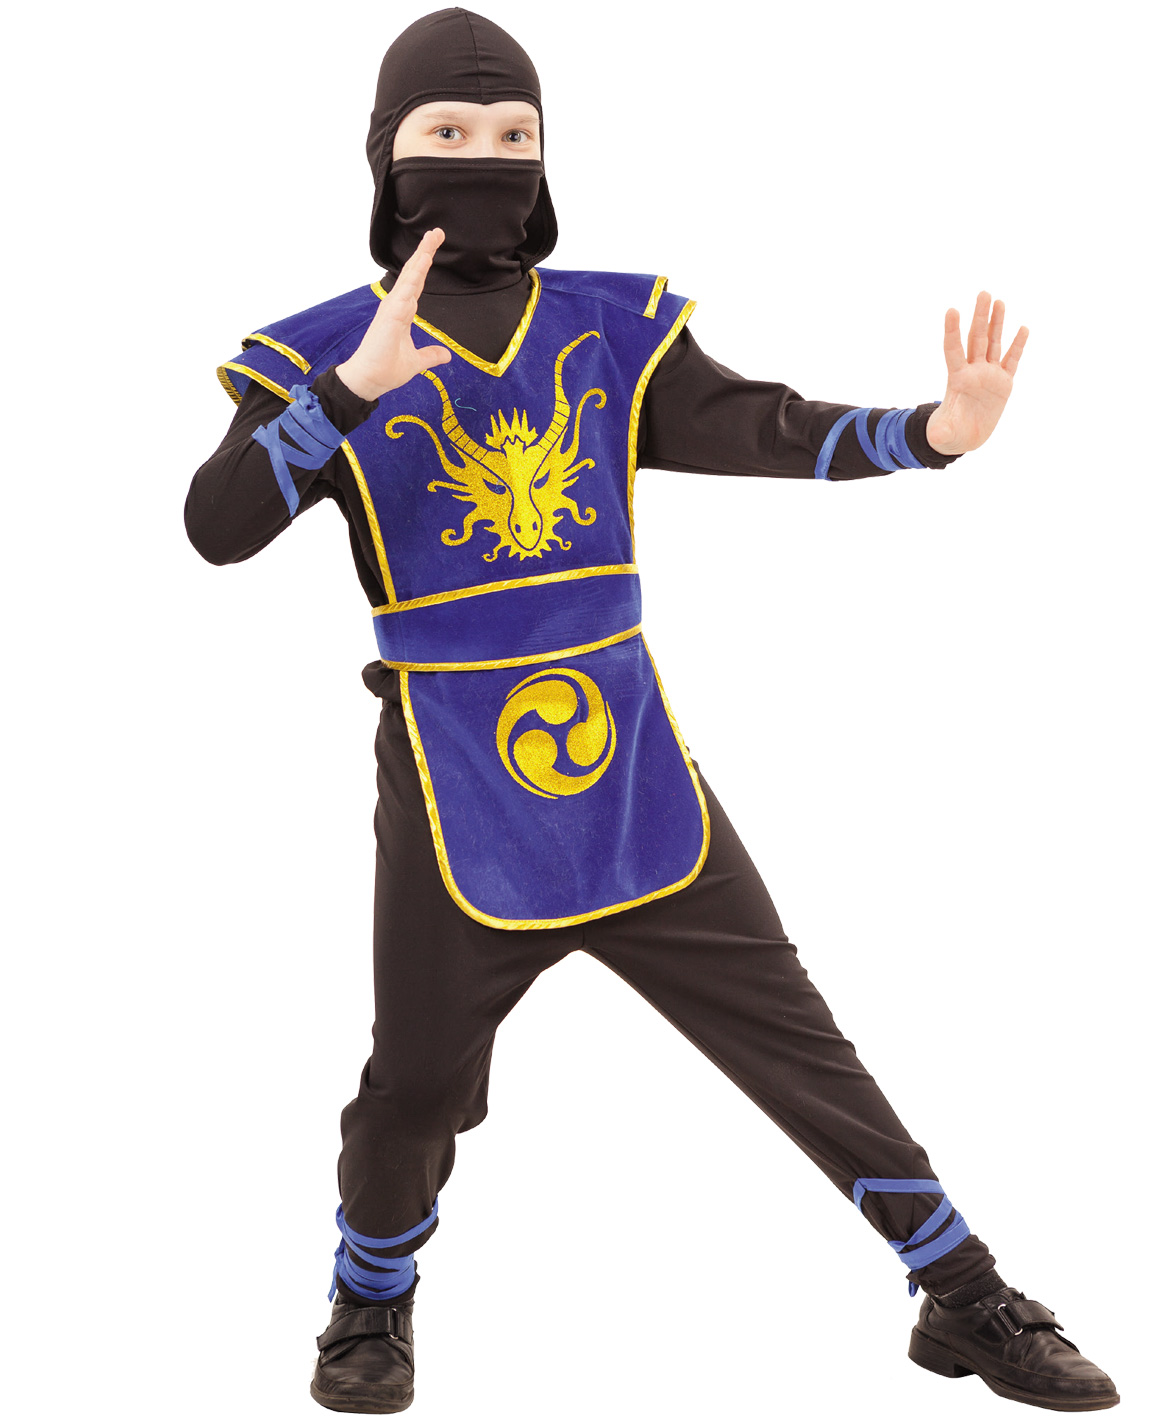 2053 к-18 Карнавальный костюм Ниндзя (куртка,трико, накидка с поясом, шапка, меч) размер 128-32